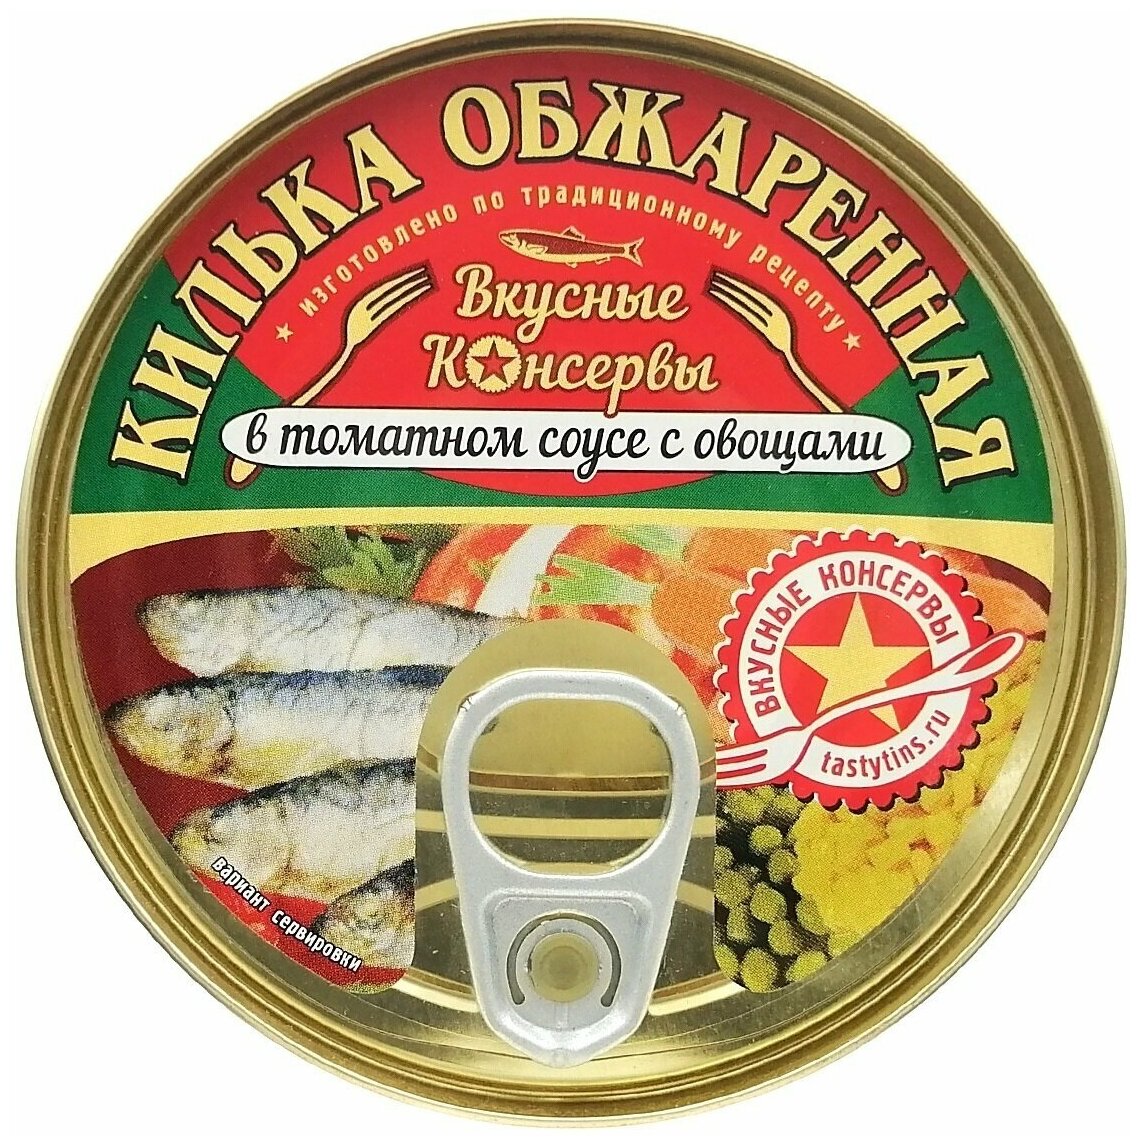 Консервы рыбные "Вкусные консервы" - Килька обжаренная в томатном соусе с овощами, 240 г - 4 шт